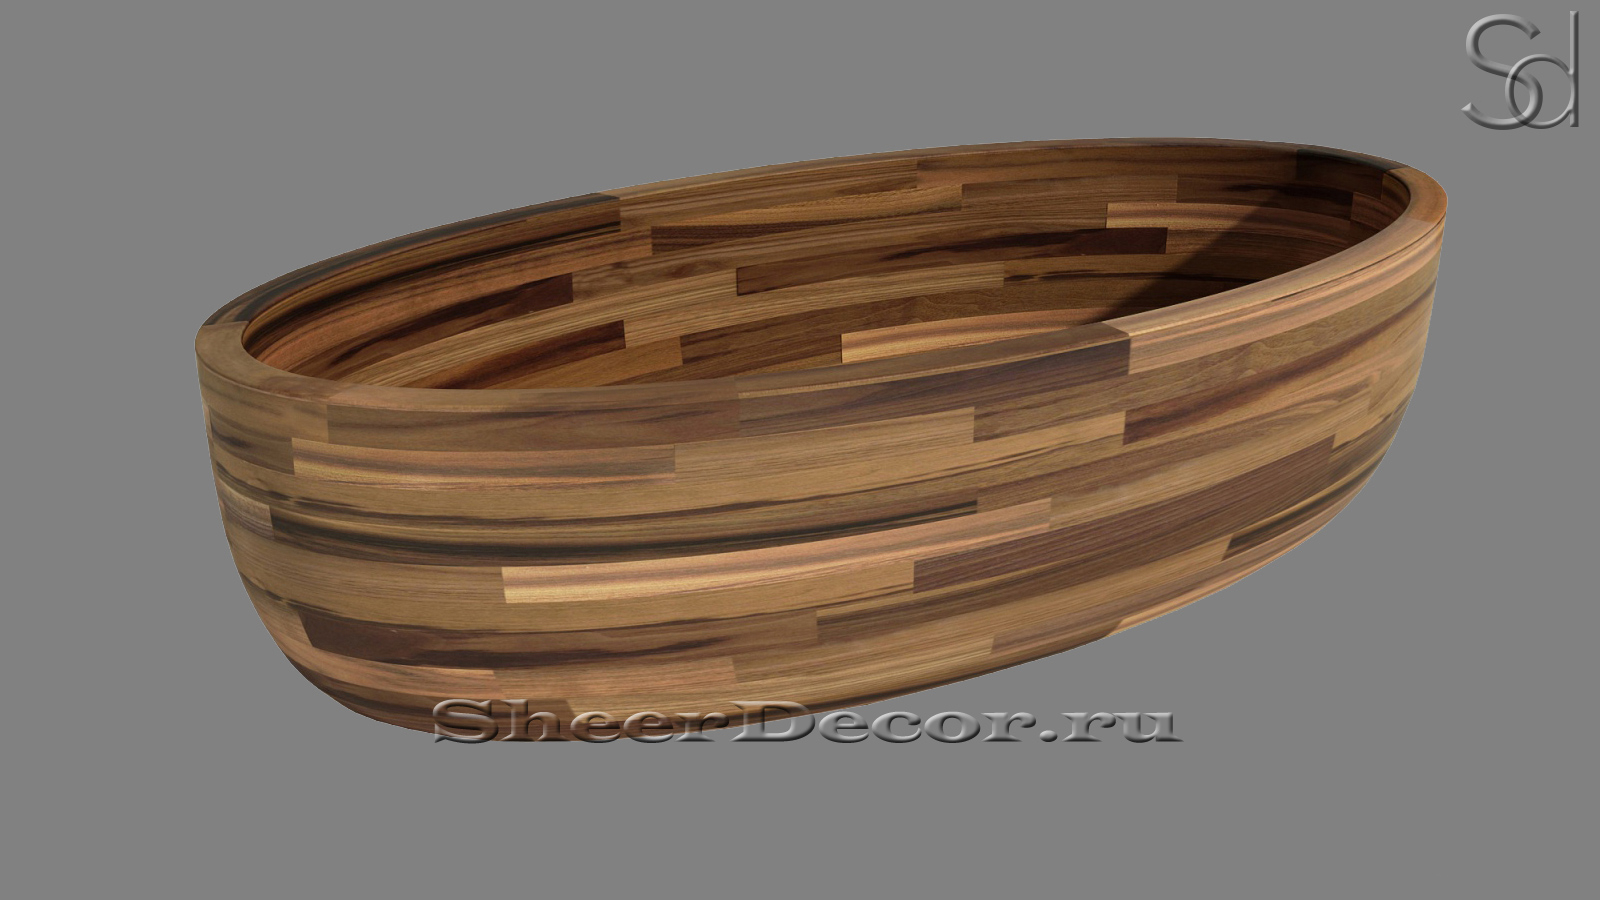 Дизайнерская ванна Tala M3 из ореха Dark Nut 071440153 овальной формы_2